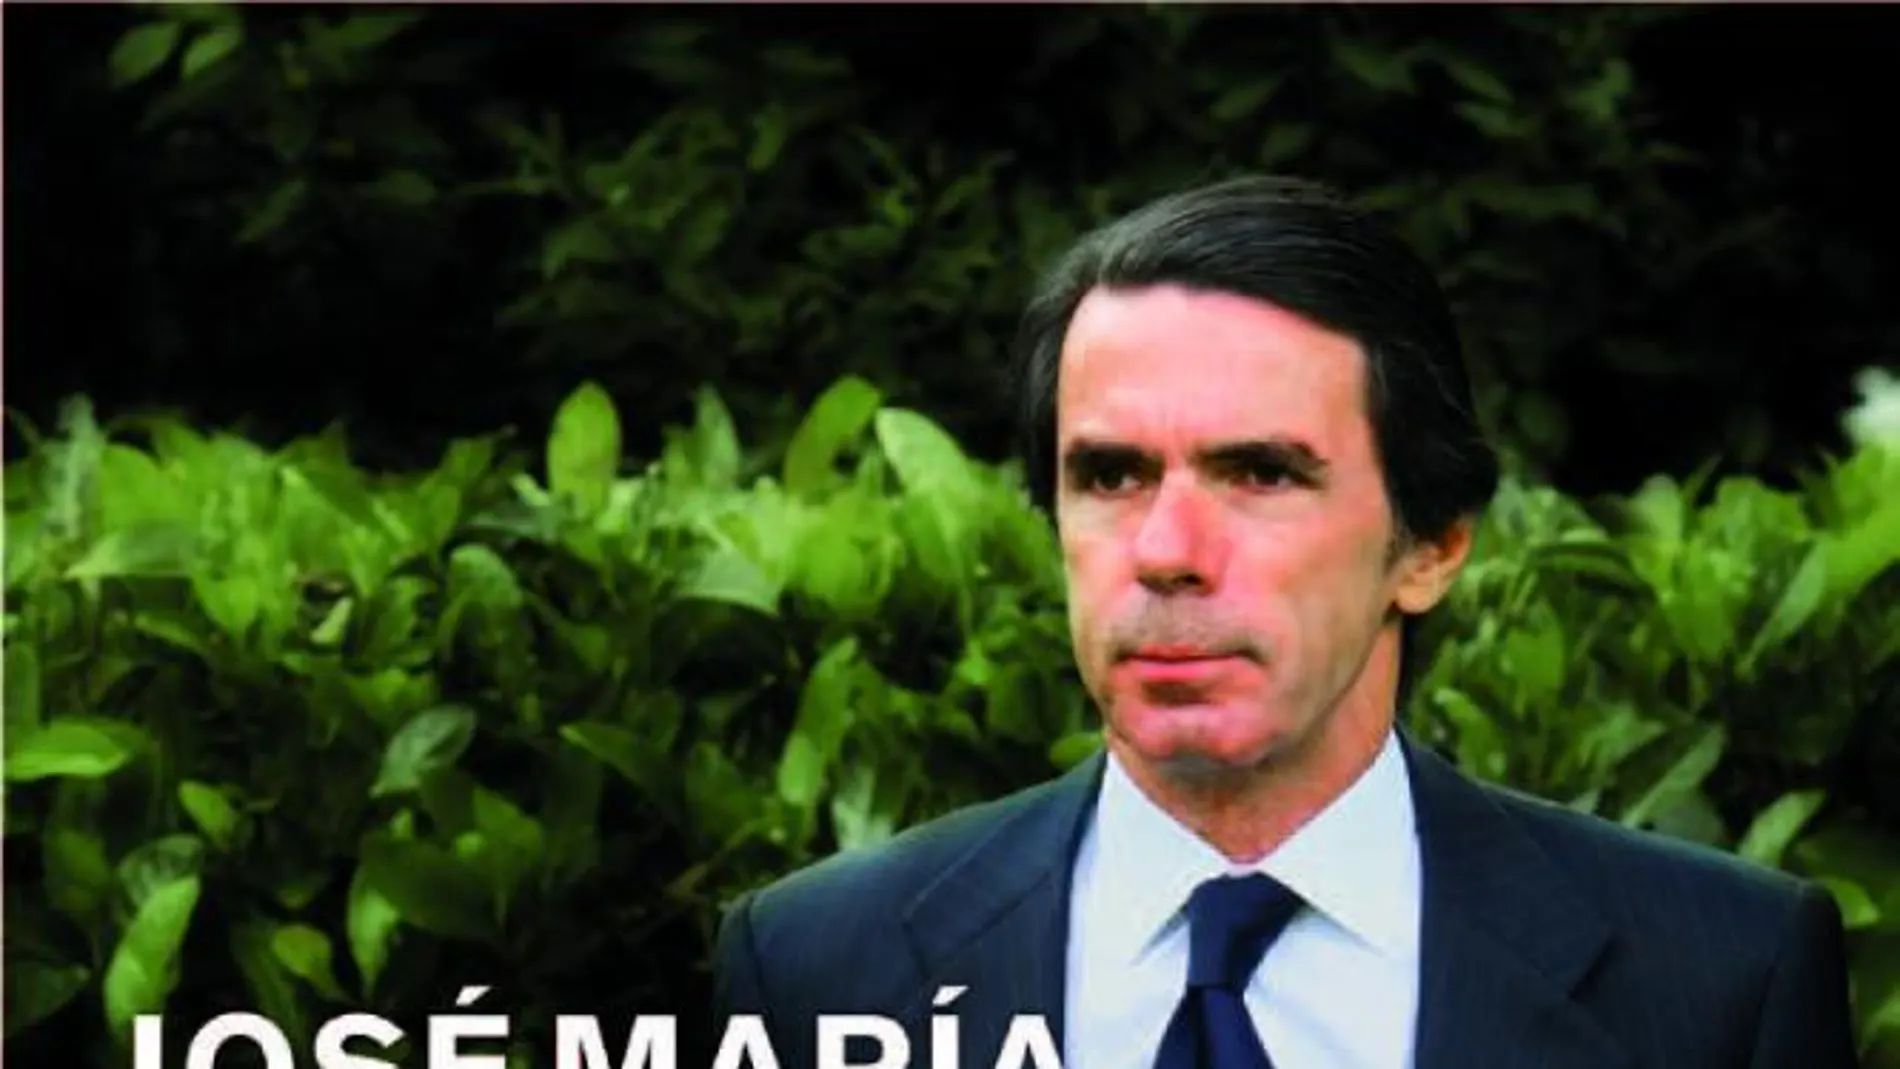 Portada del libro de memorias de José María Aznar